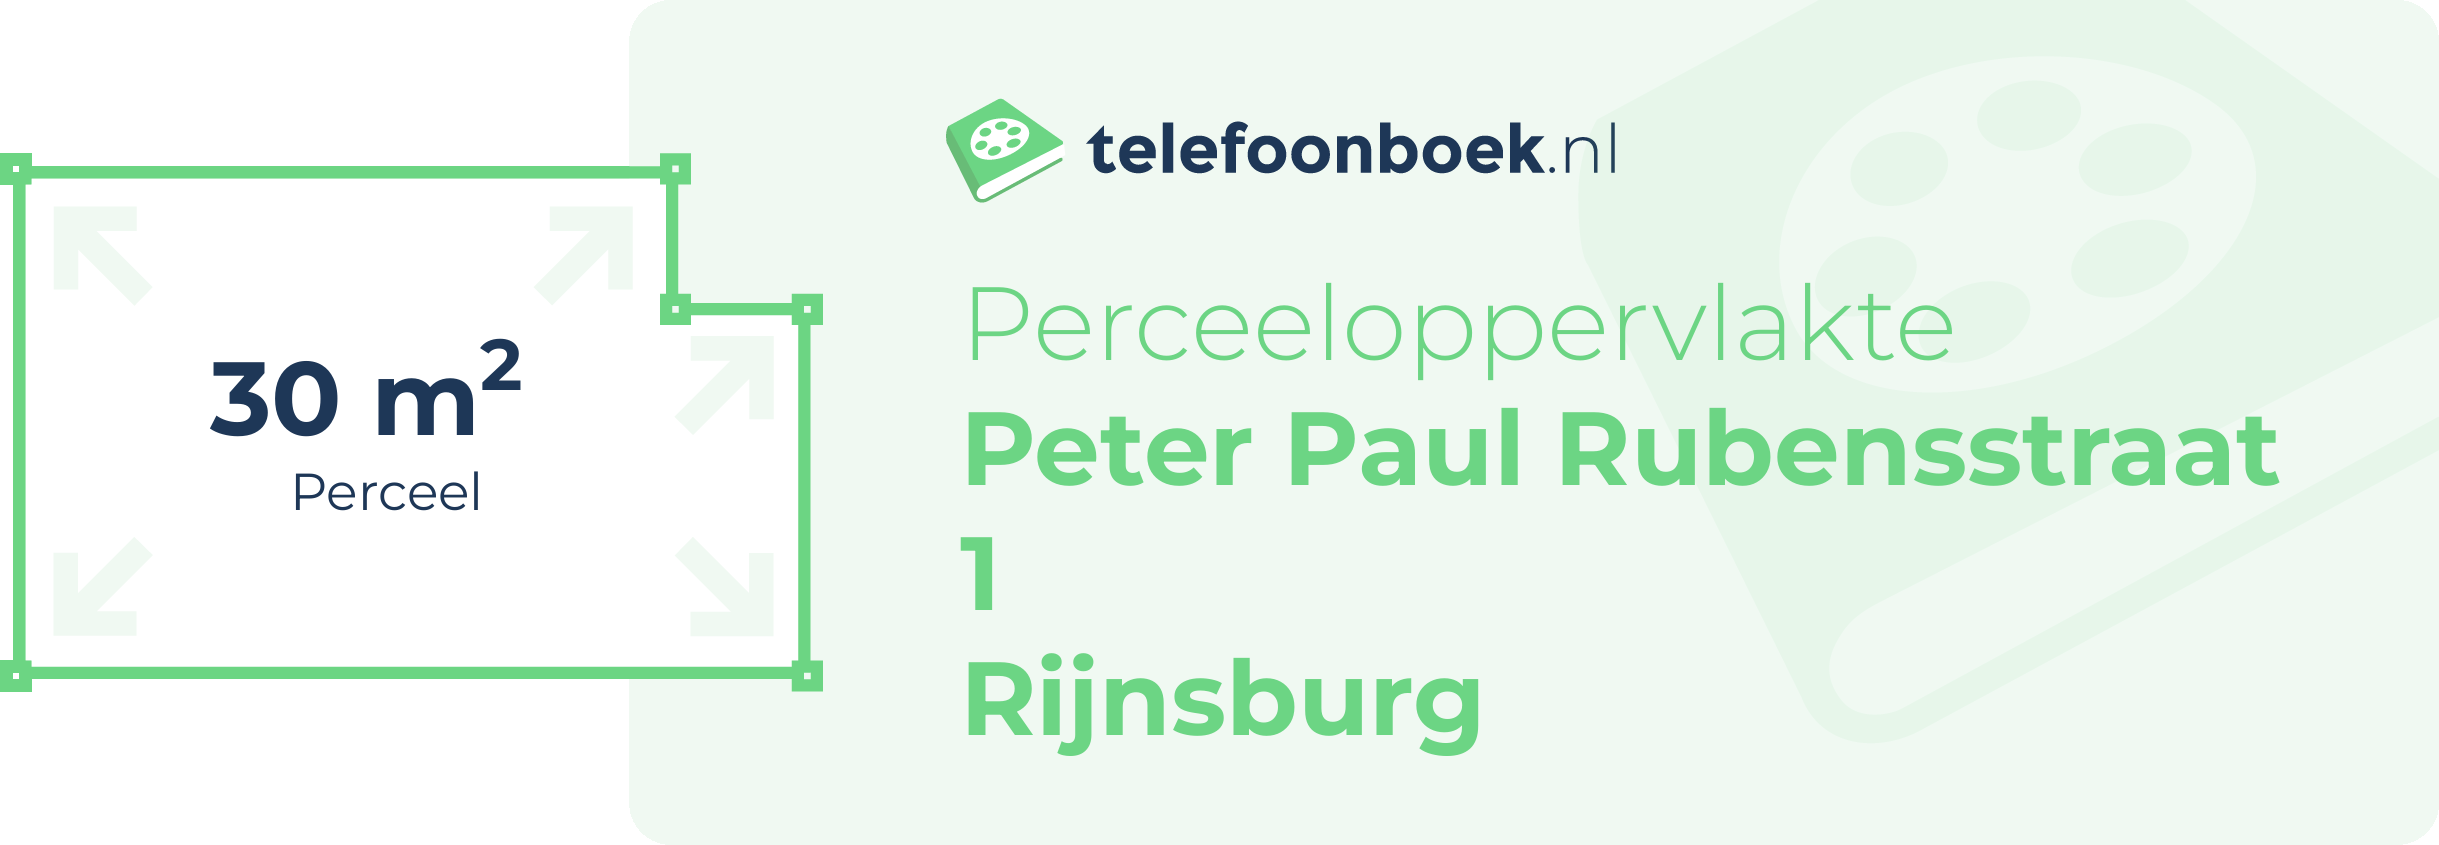 Perceeloppervlakte Peter Paul Rubensstraat 1 Rijnsburg